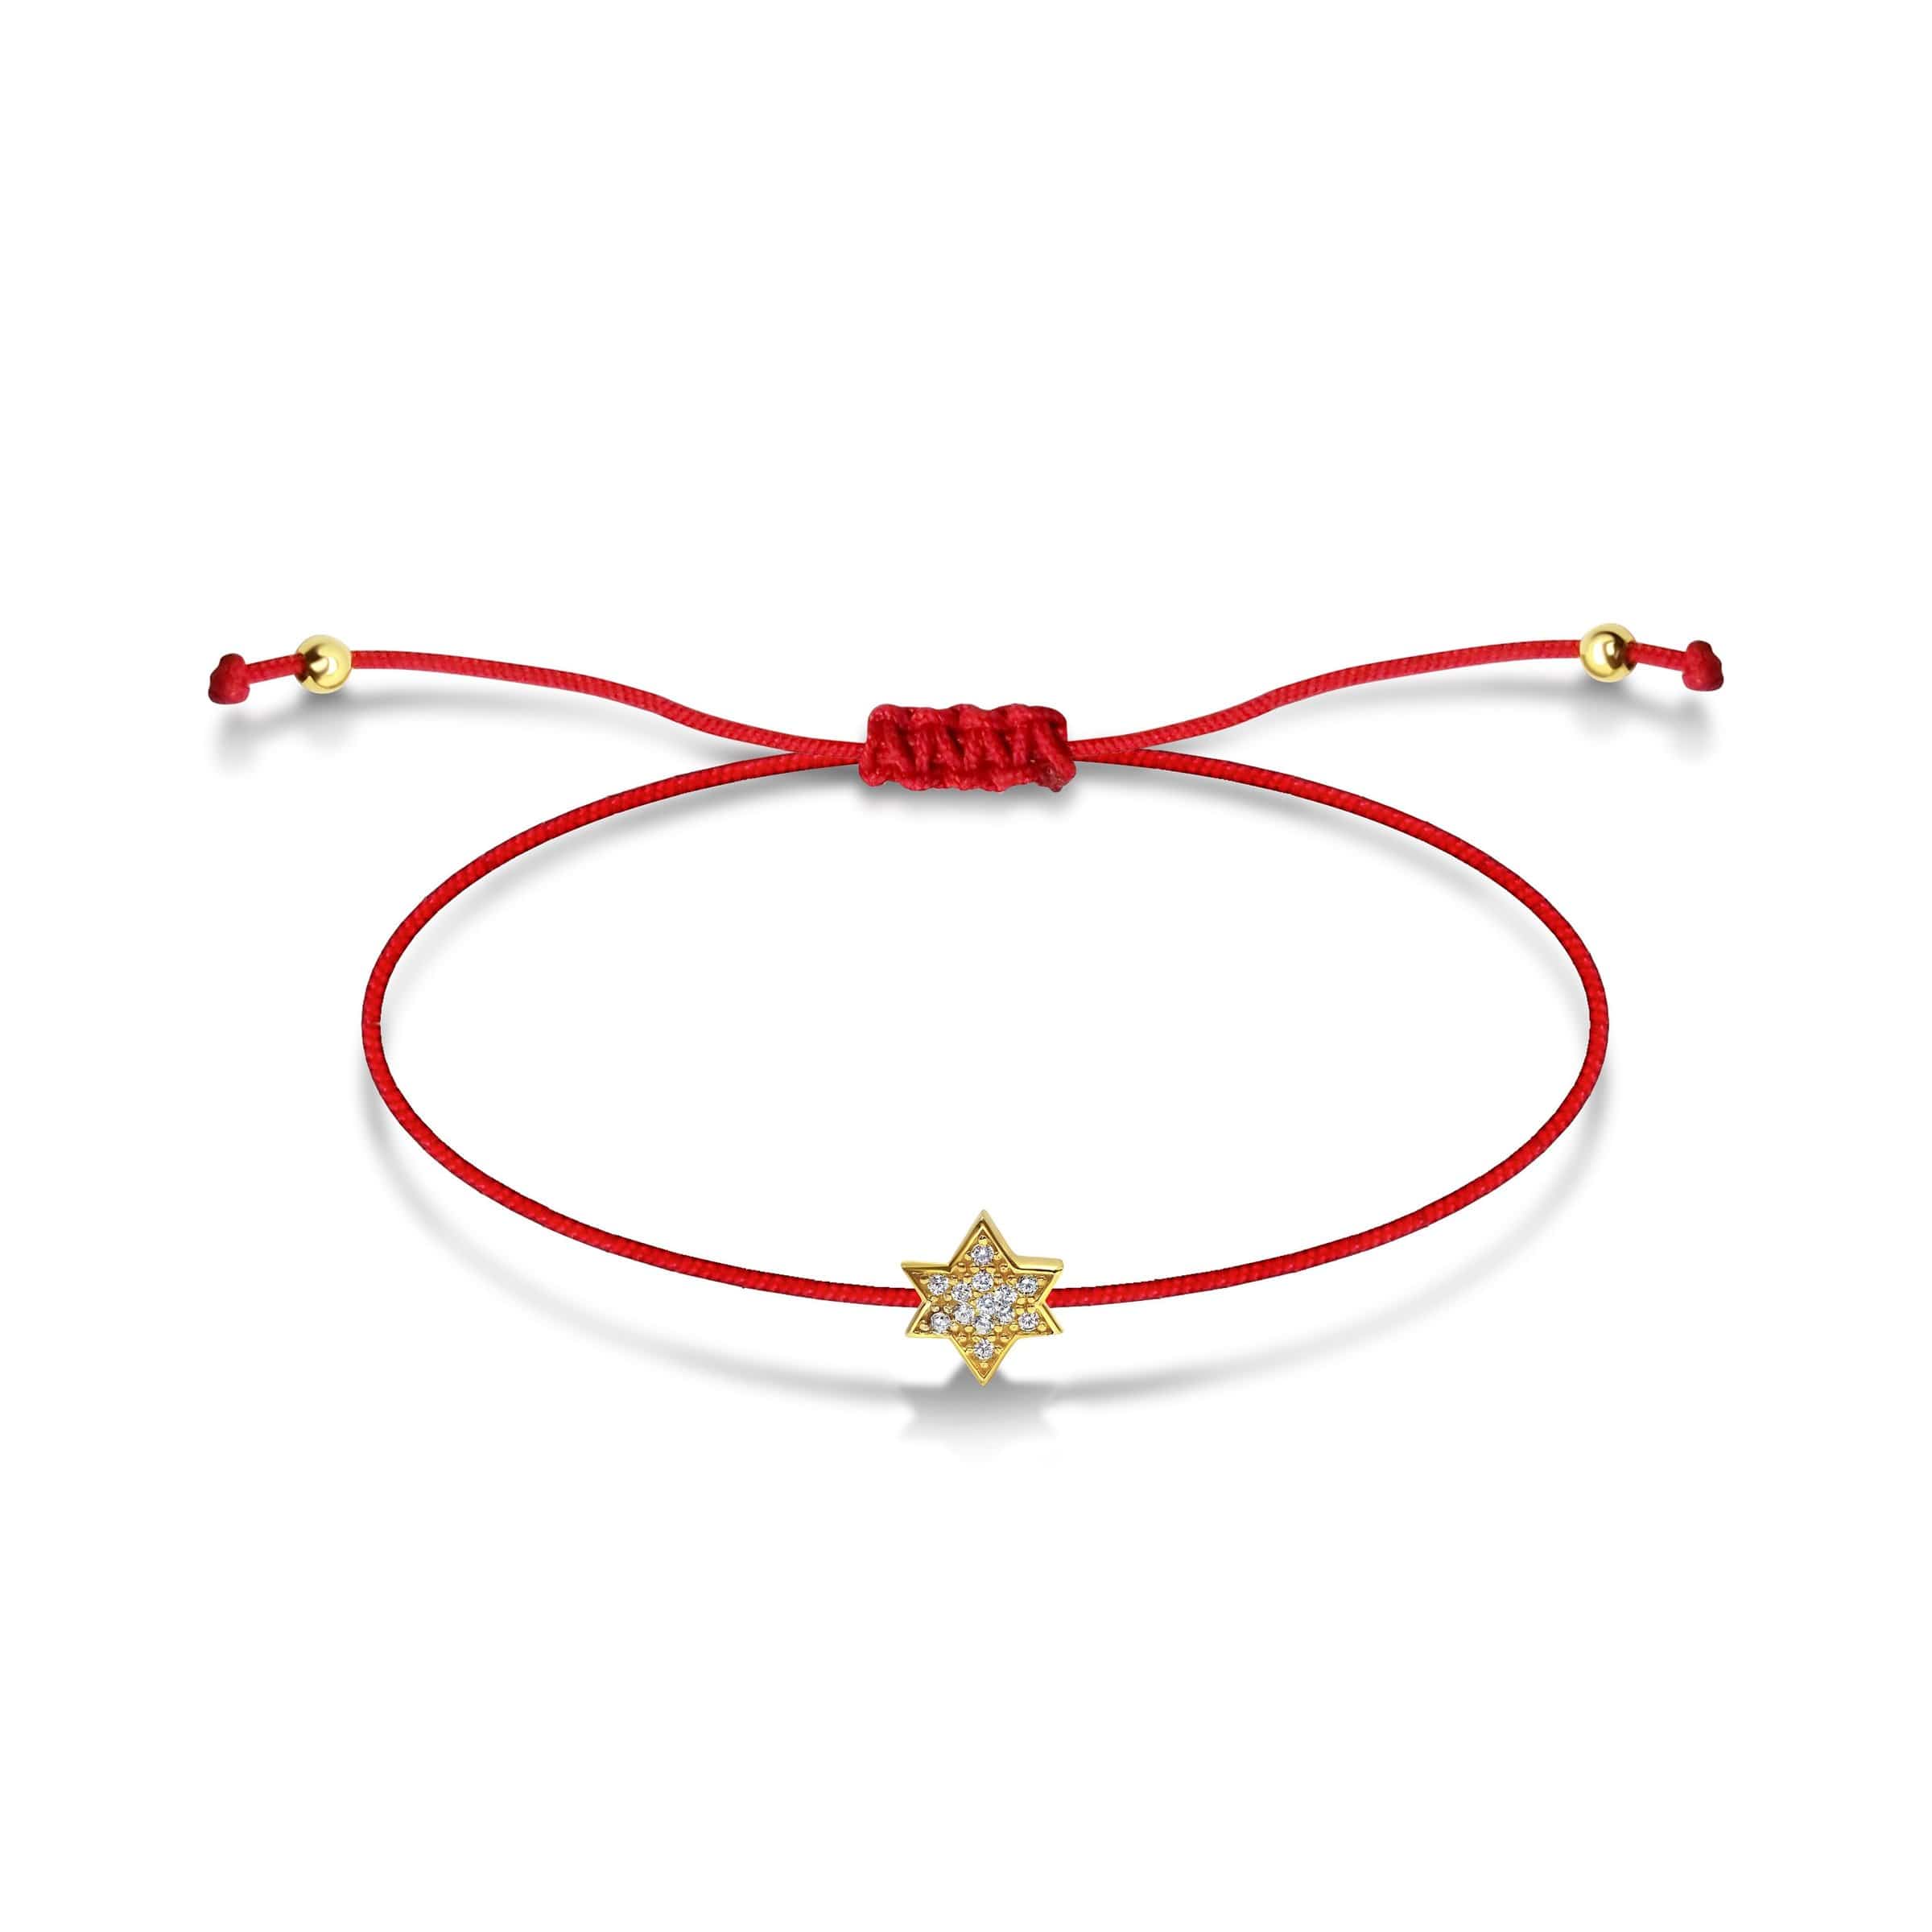 String Link Bracelet - 14k Gold And Red